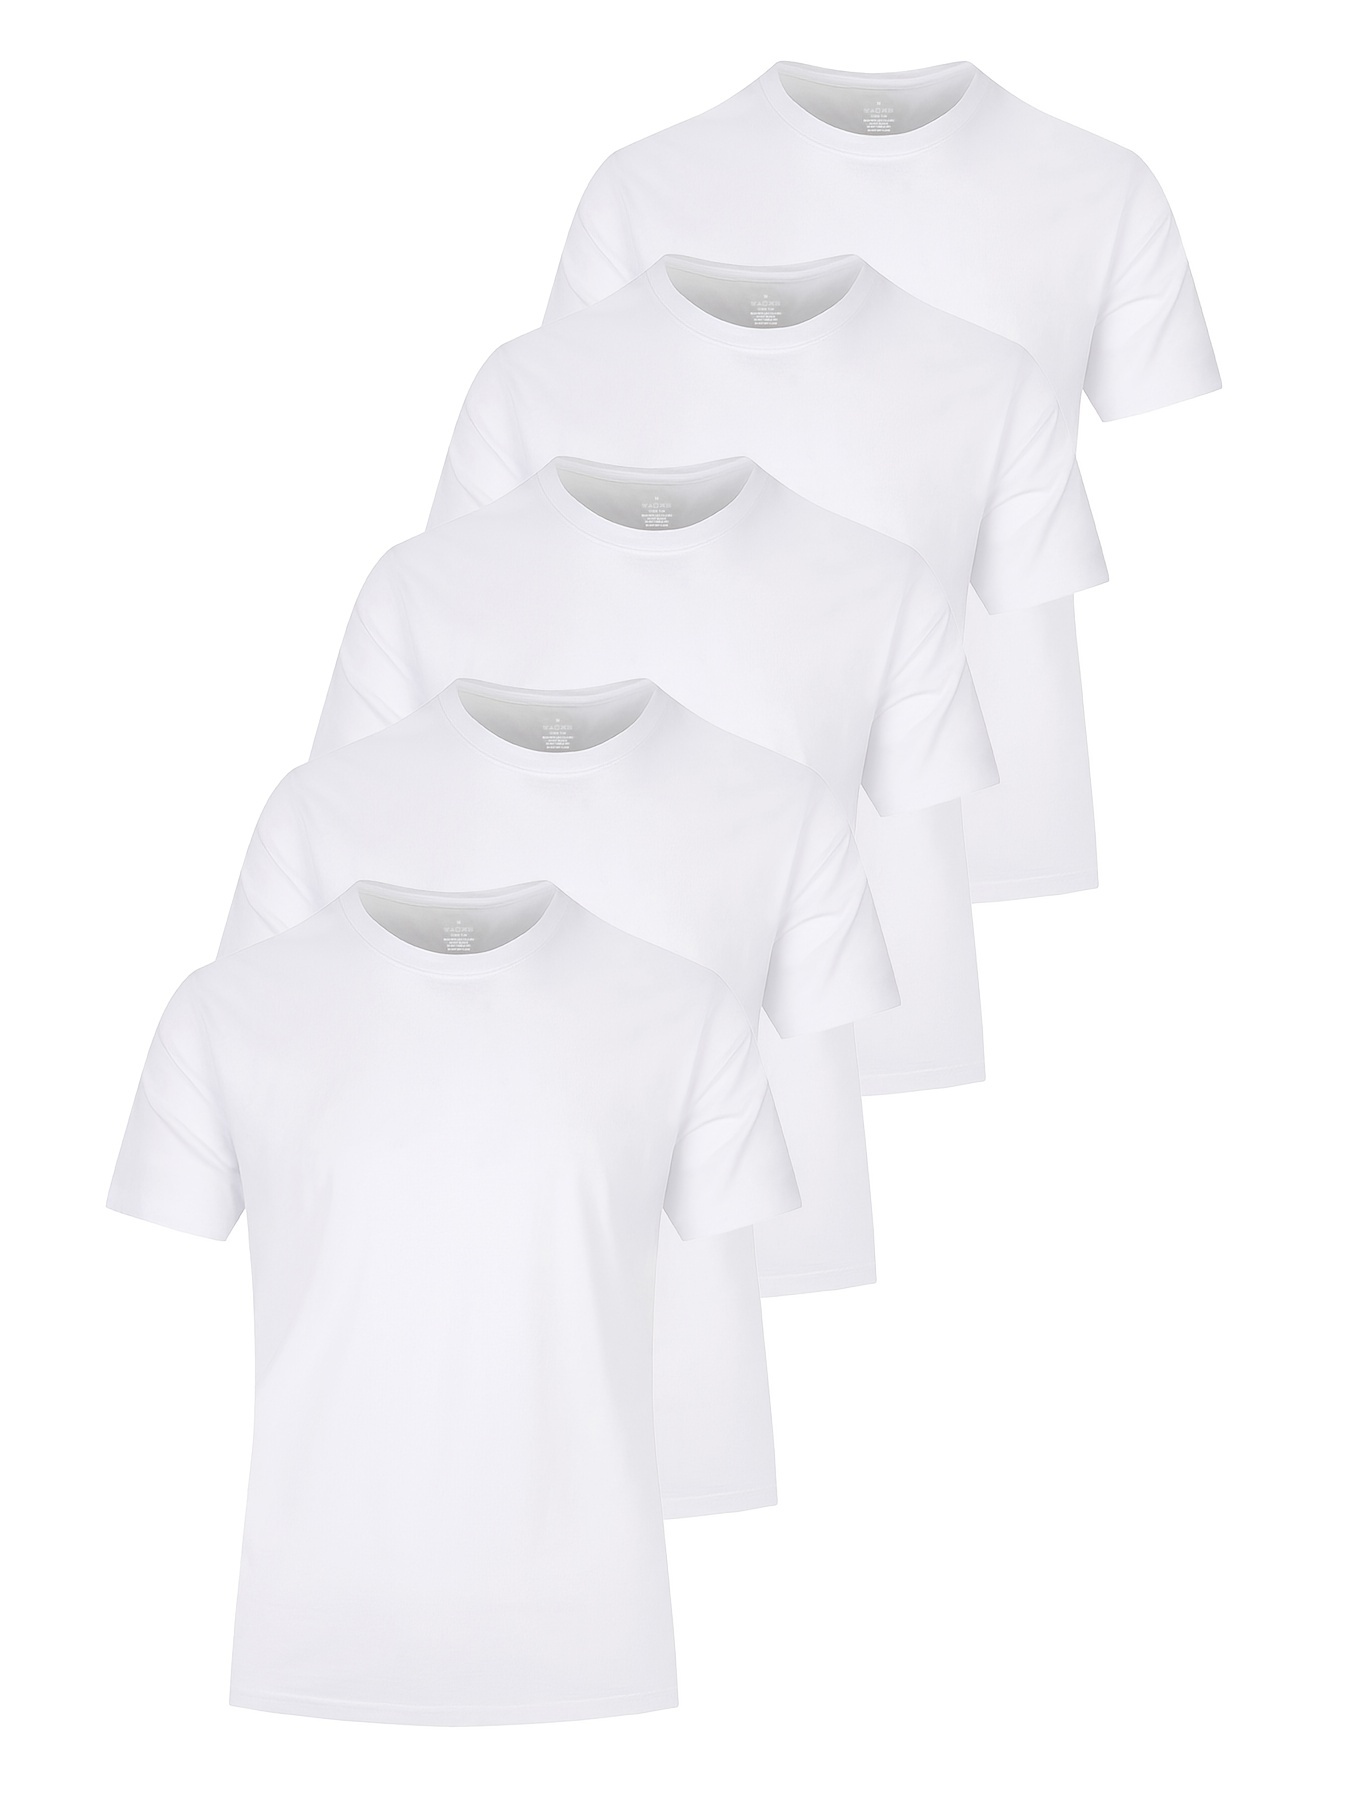  Fruit of the Loom Paquete de 5 camisetas blancas para niños,  talla L, color blanco, Blanco : Ropa, Zapatos y Joyería